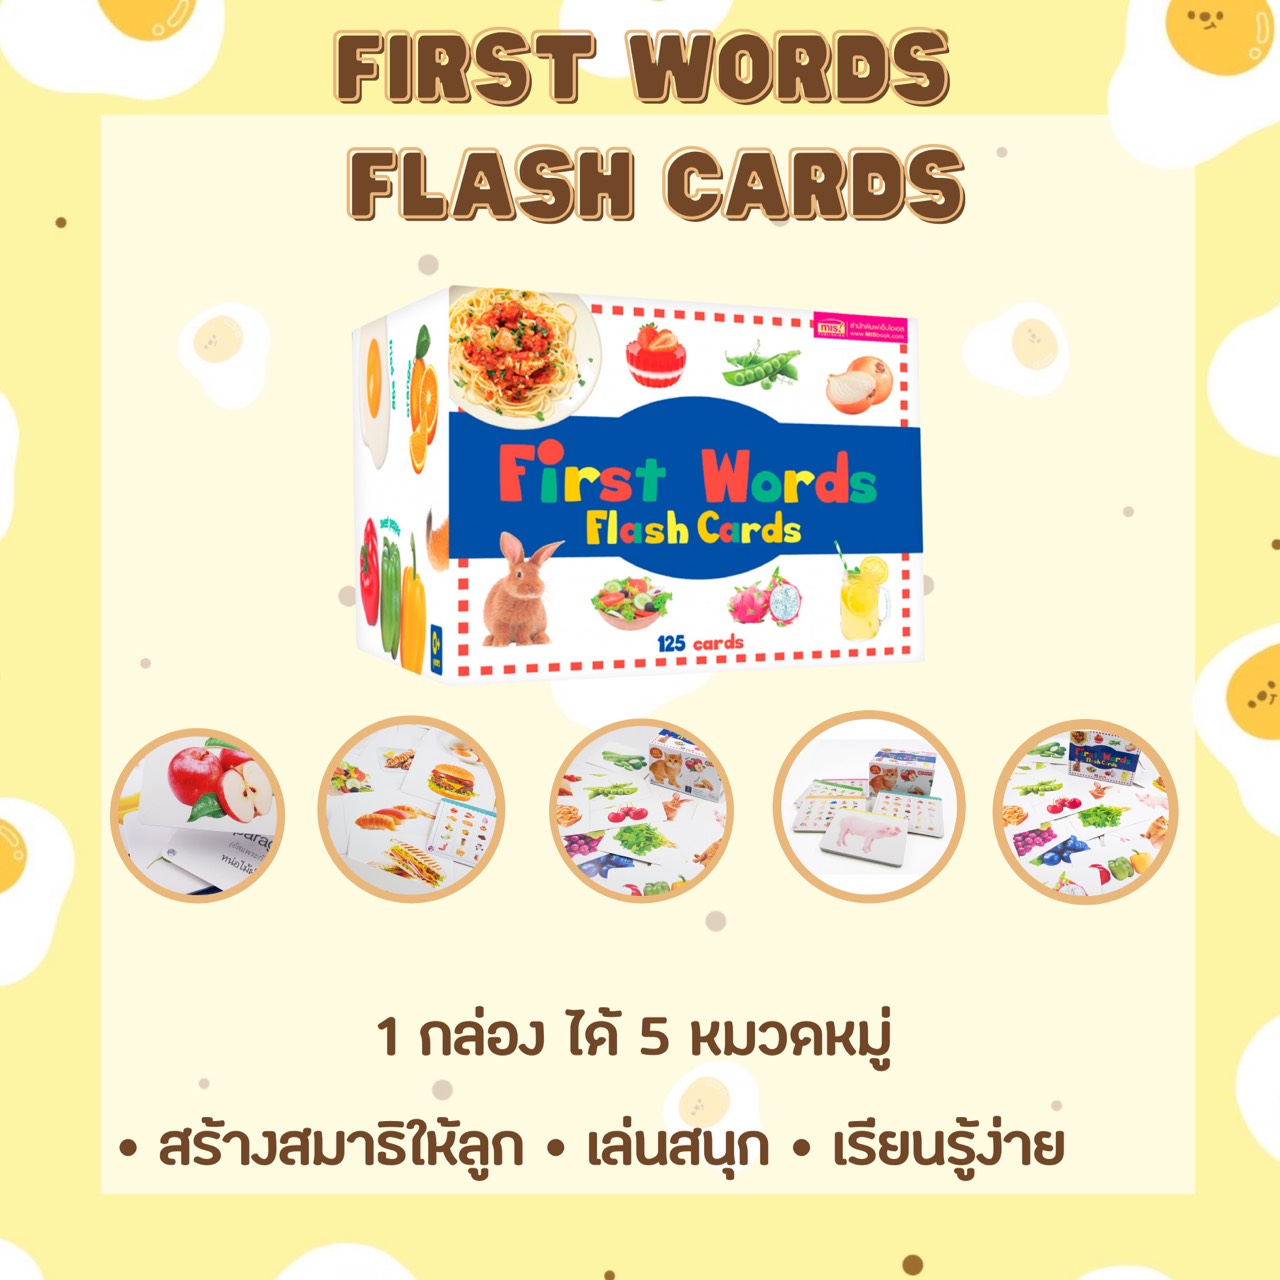 การ์ดกล่องน้ำเงิน - แฟลชการ์ด แฟลชการ์ดเด็ก แฟลชการ์ดสัตว์ แฟลชการ์ดผลไม้ บัตรคำศัพท์ บัตรคำสัตว์ จาก talkingpen thailand ปากกาพูดได้